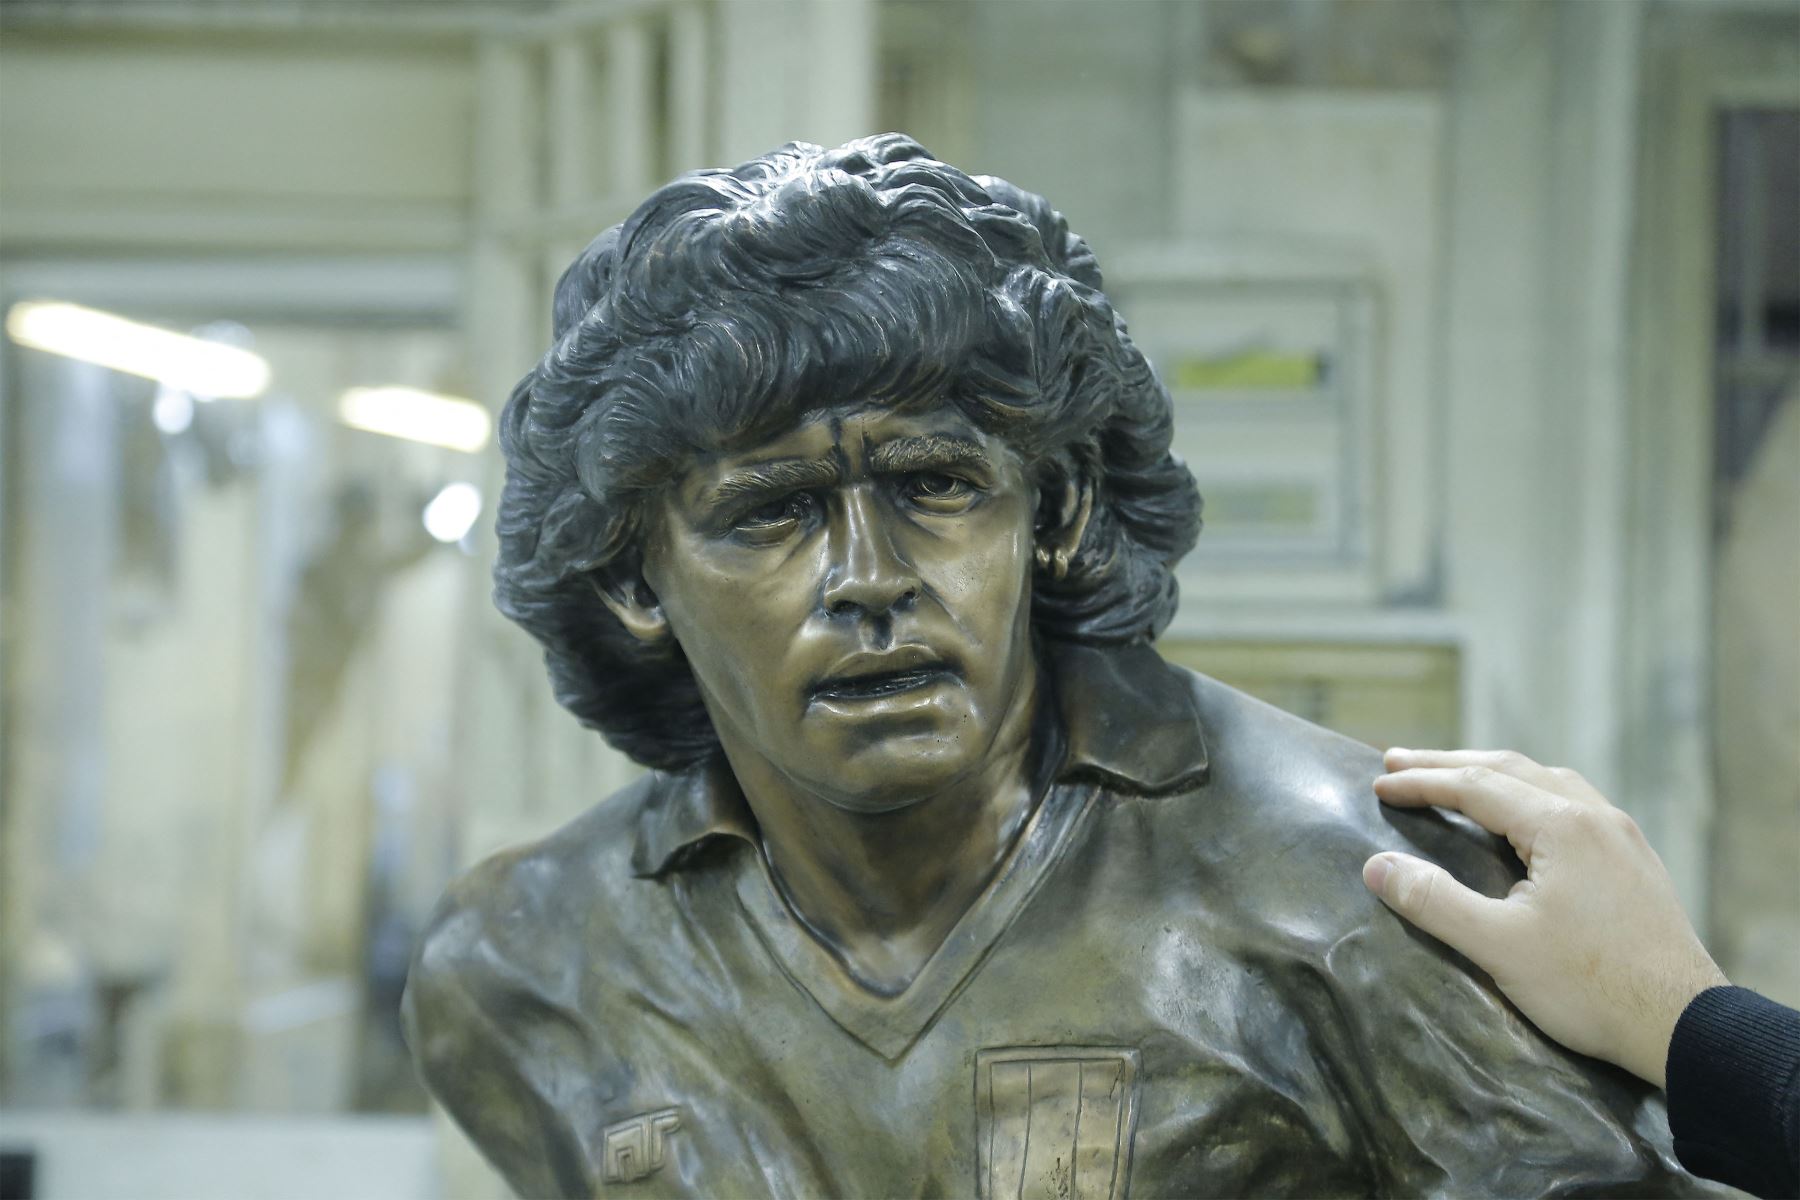 La estatua de bronce inspirado en Diego Armando Maradona  hecha por el escultor Domenico Sepe.
Foto: AFP